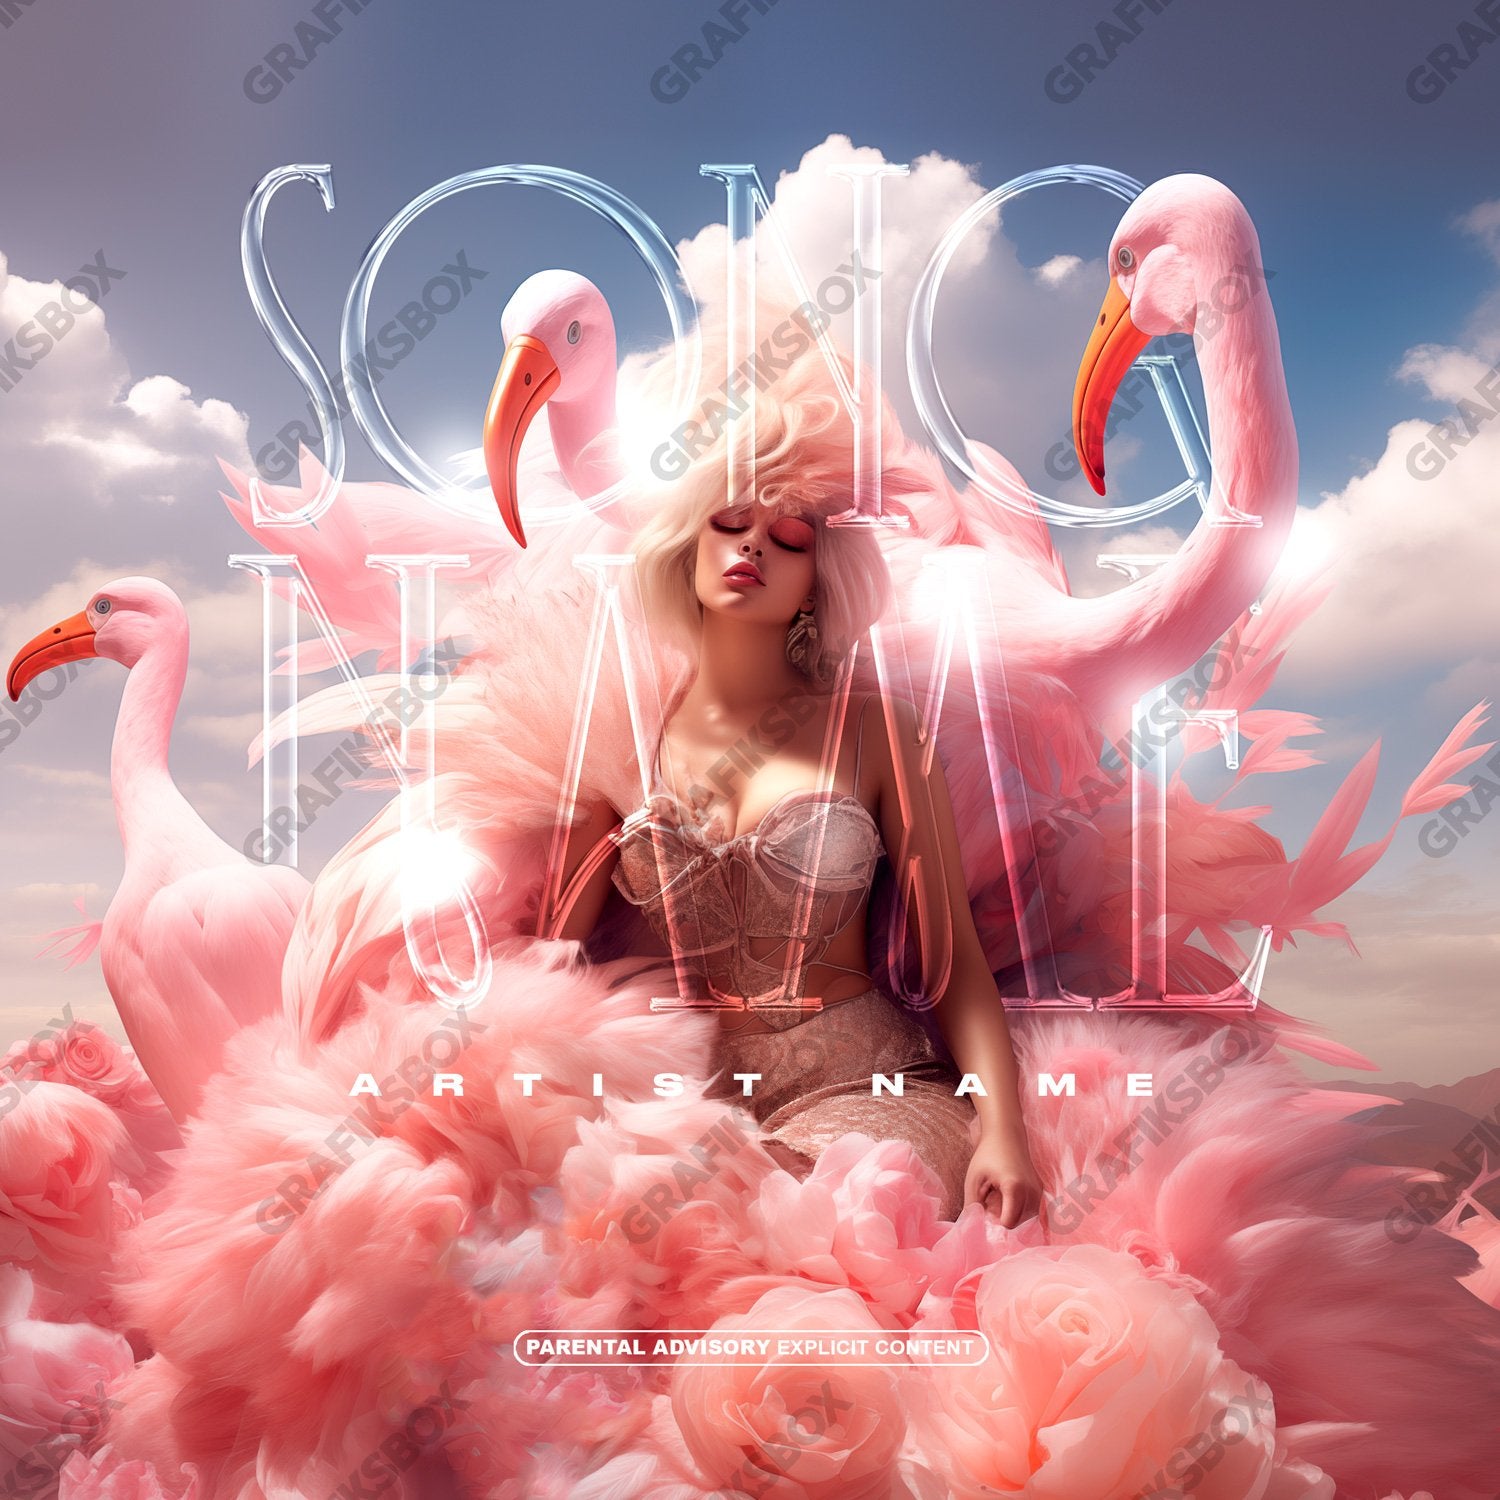 Storks premade cover art